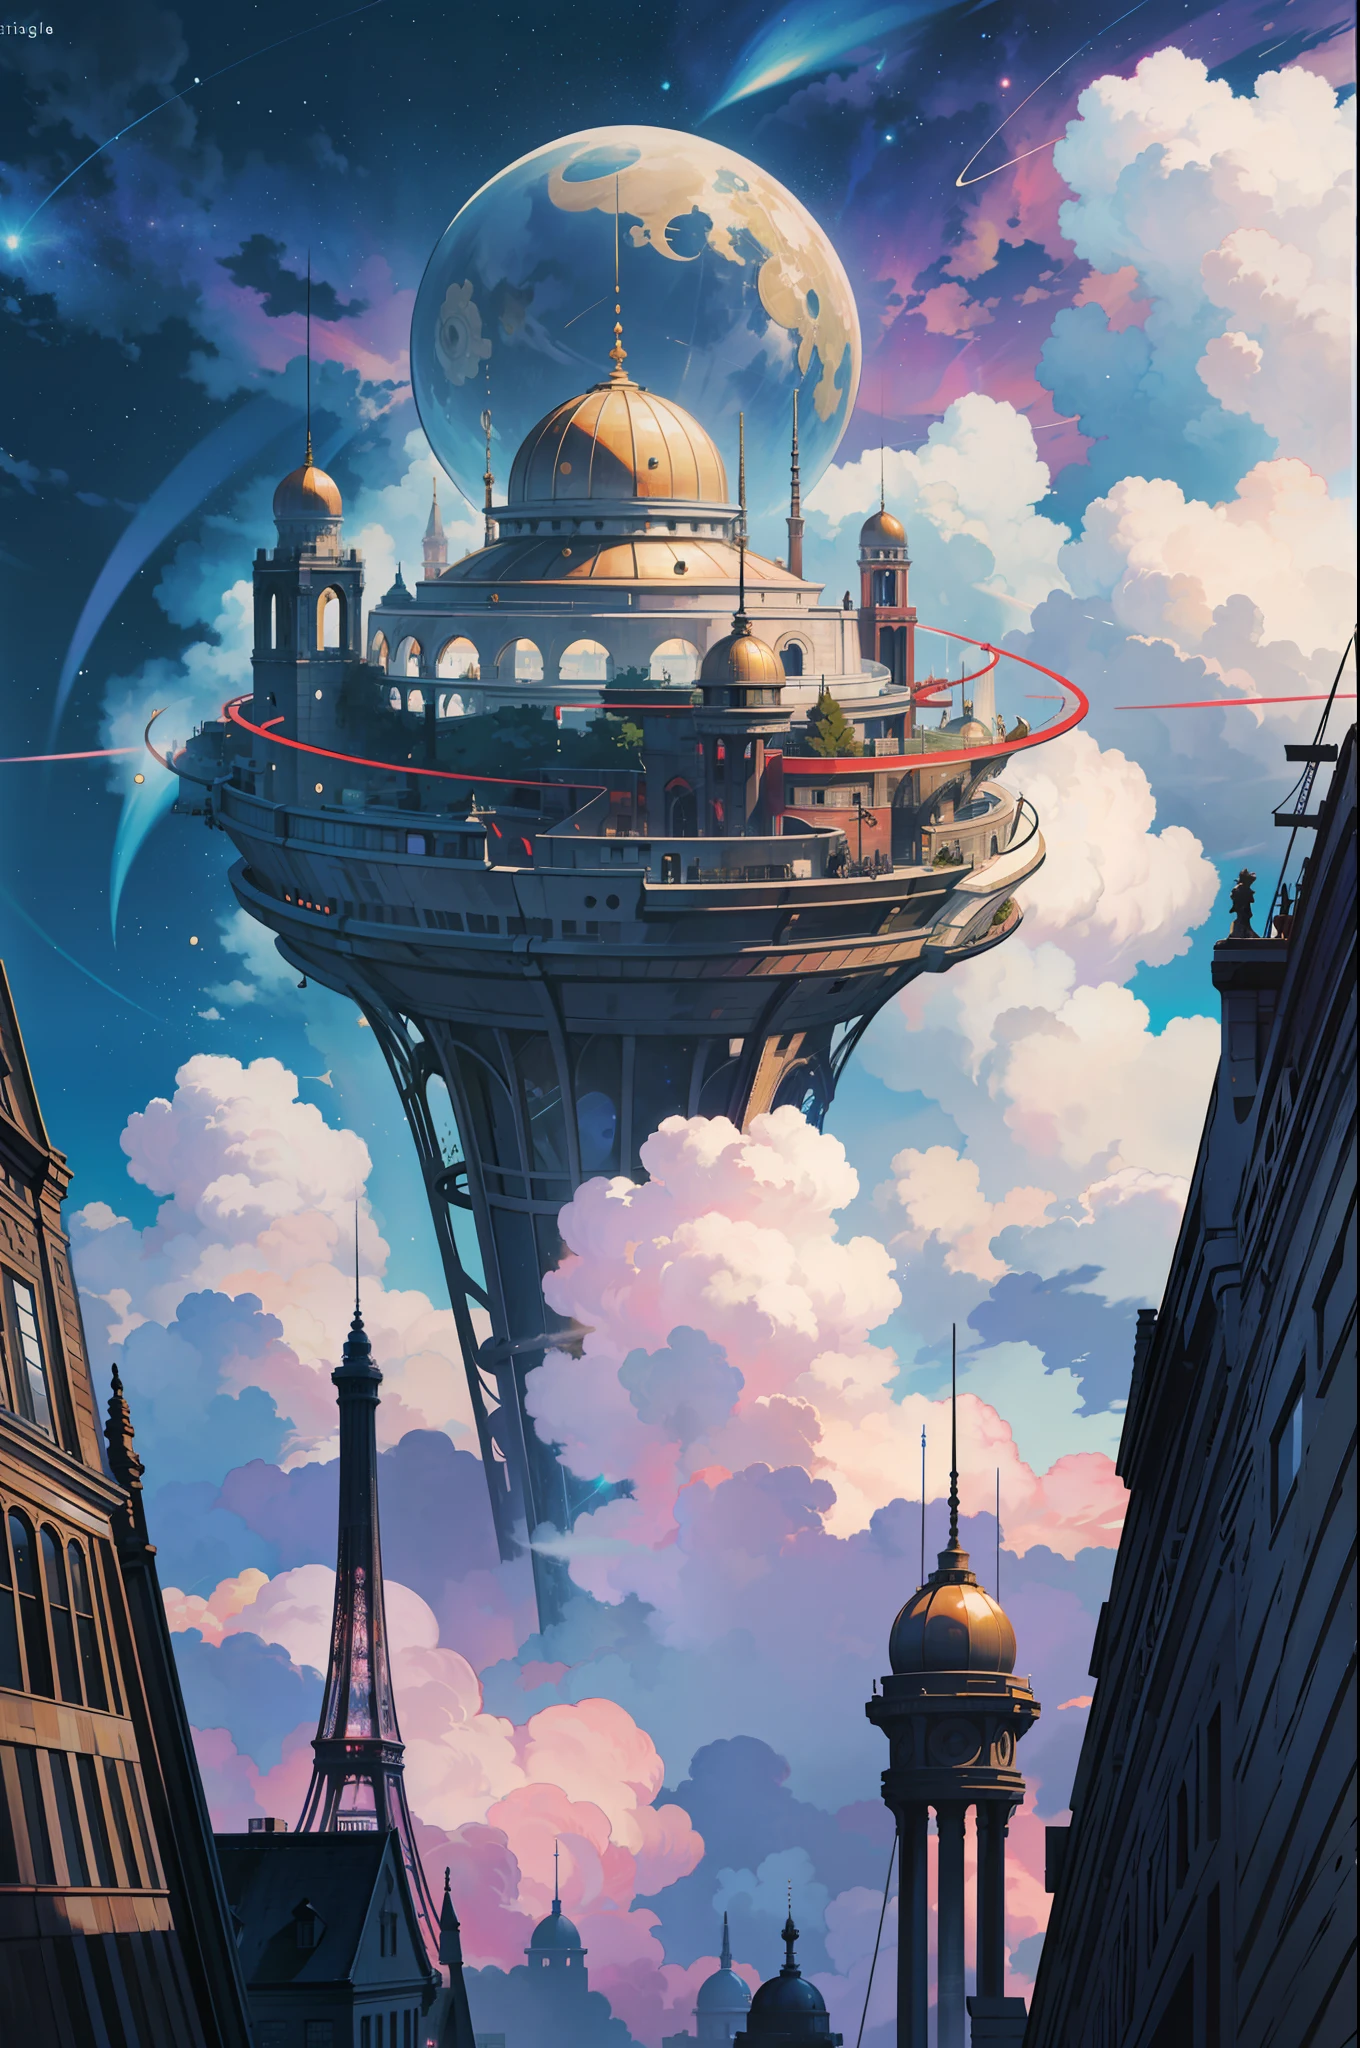 （léviter：1.5），（Une immense ville steampunk à double anneau flottant dans l&#39;espace：1.3），（Ville steampunk futuriste illuminée：1.4），（nuages épais：1.4），（Style de Makoto Shinkai：1.4），réjouir，qualité parfaite，Mise au point claire（désordre - maison：0.8）， （chef-d&#39;œuvre：1.2）， （de manière réaliste：1.2） ，（avec une lumière brillante：1.2）， （meilleure qualité）， （ciel étoilé détaillé：1.3） ，（détails complexes）， （8k）， （Météore de détail） ，（netteté），（s&#39;amuser），（Oeuvre numérique primée：1.3） de （esquisse：1.3），（avec dynamisme：1.3）,lumière de studio,thème，regardant d&#39;en haut, l&#39;espace, deloat， --à 6